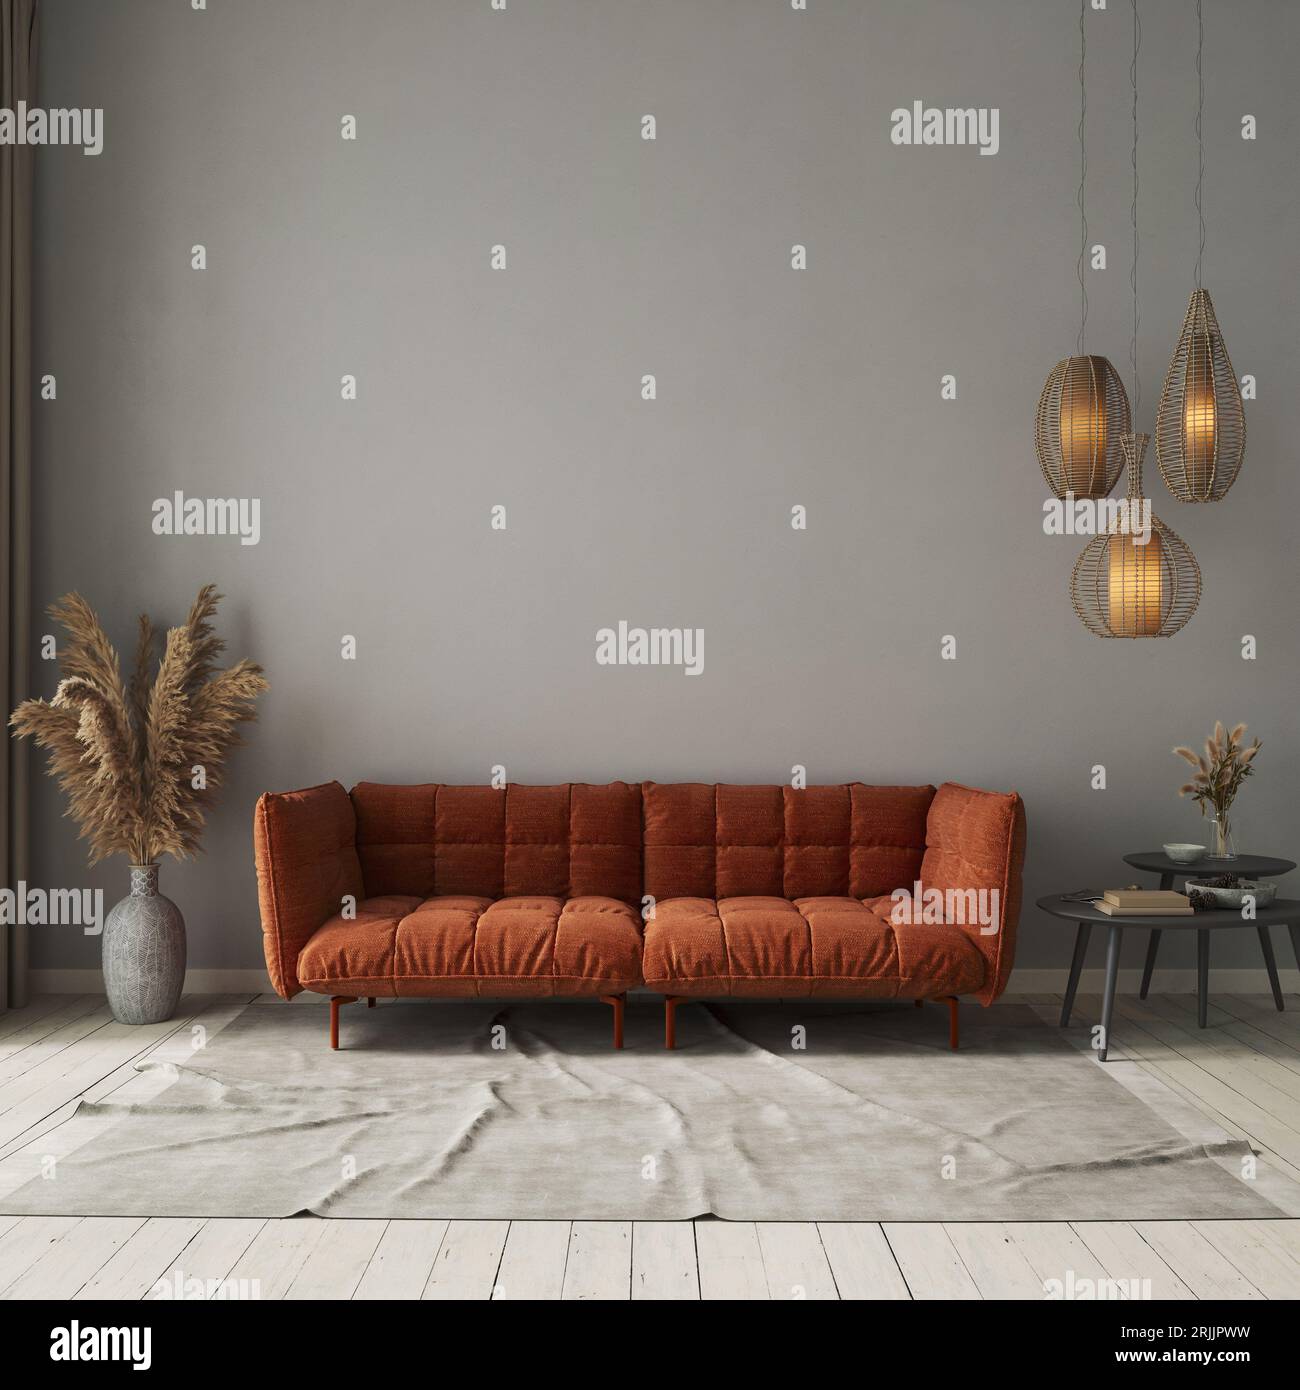 Interno del soggiorno con divano arancione su sfondo grigio in cemento. Mockup interno Foto Stock